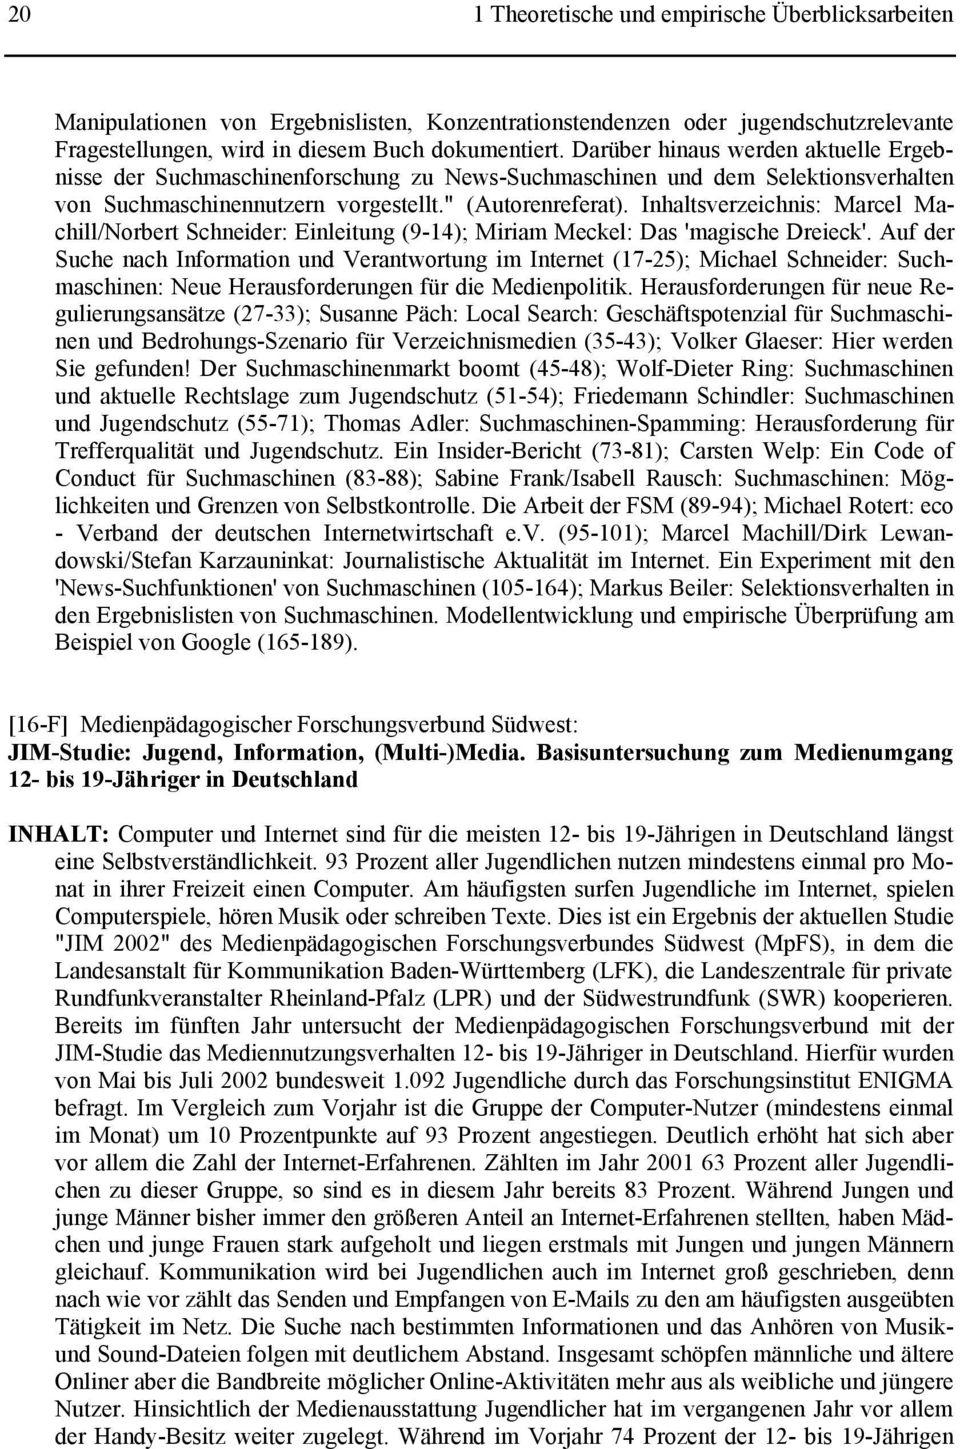 Inhaltsverzeichnis: Marcel Machill/Norbert Schneider: Einleitung (9-14); Miriam Meckel: Das 'magische Dreieck'.